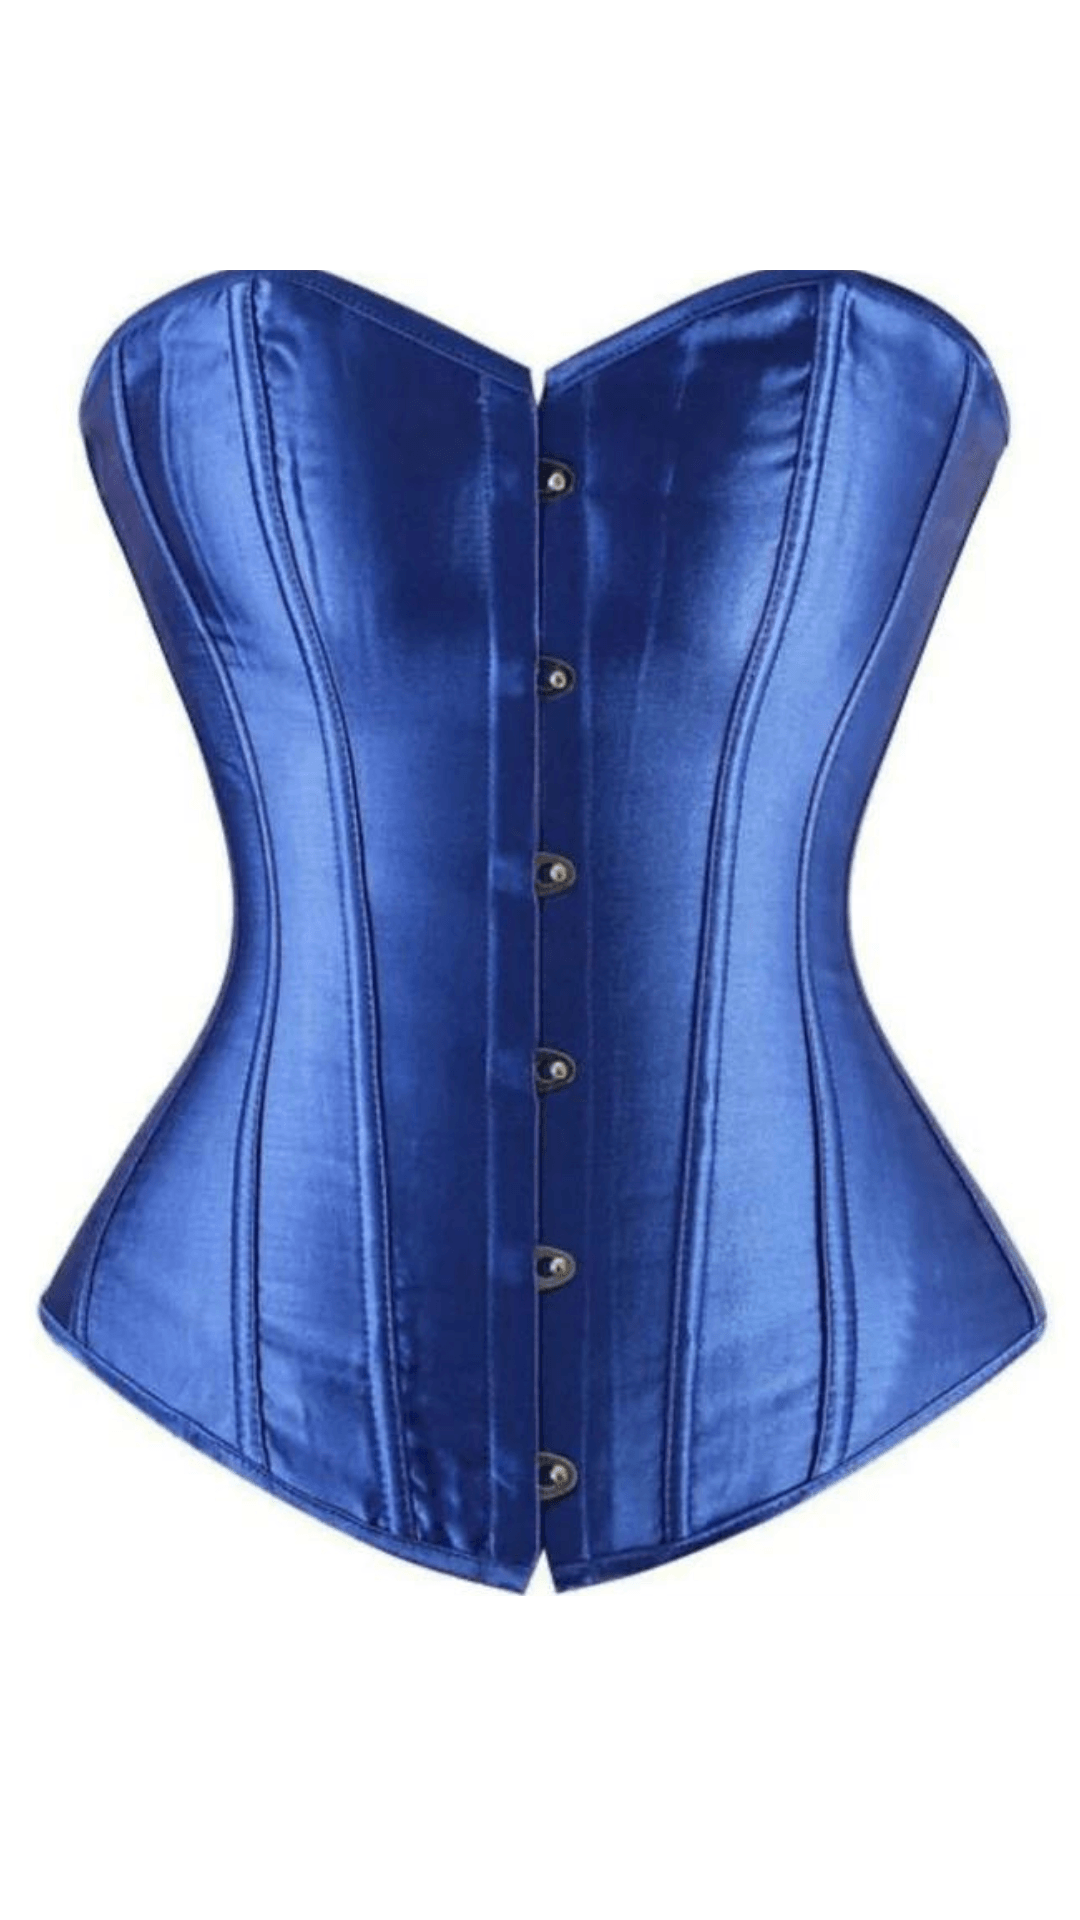 blue satin corsets - Valour